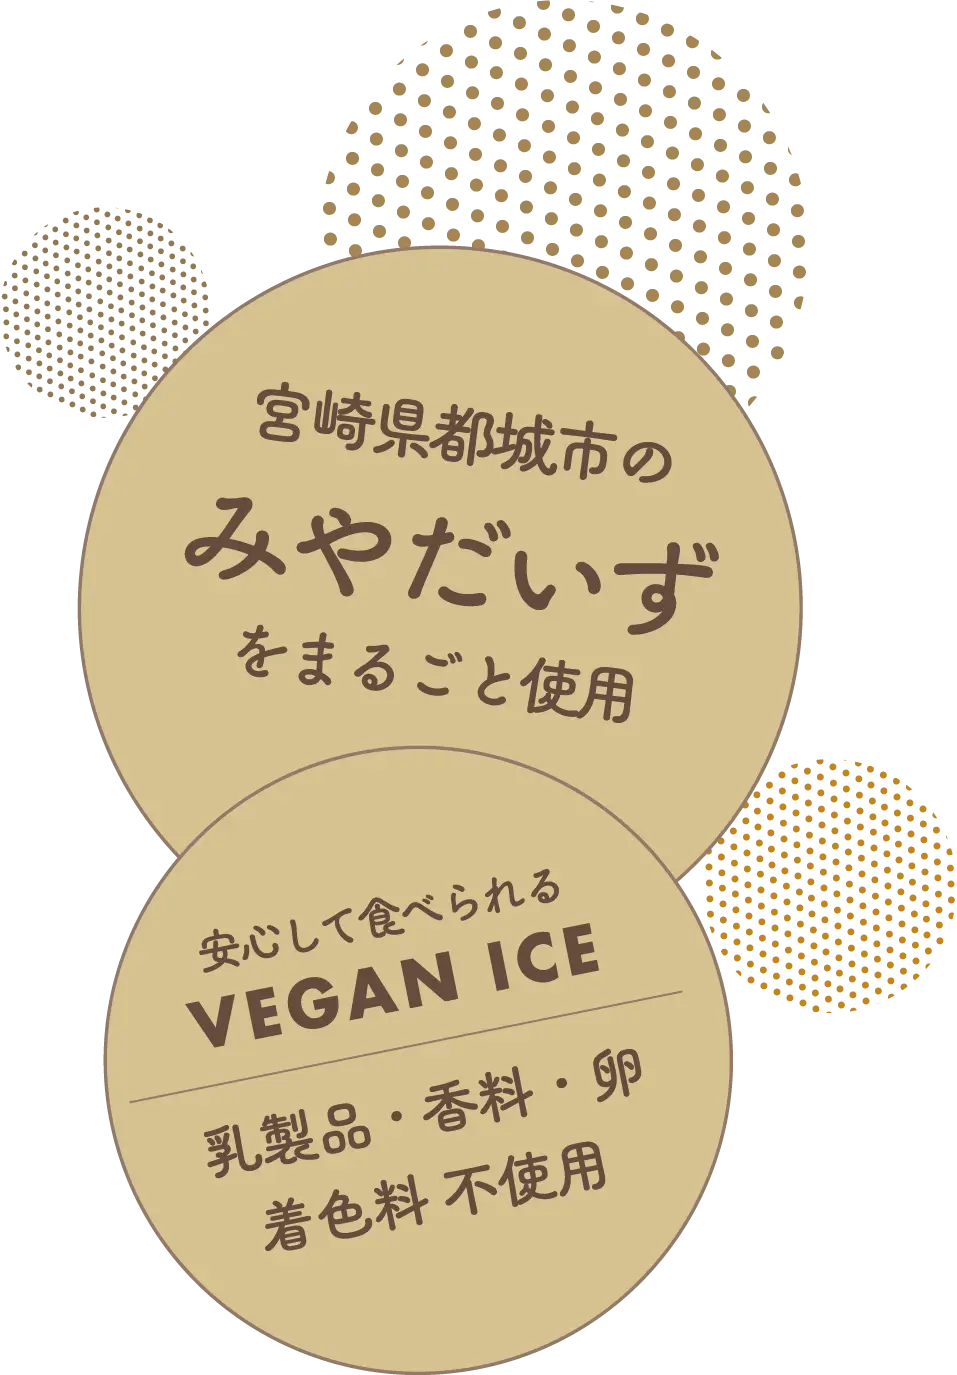 宮崎県都城市のみやだいずをまるごと使用！乳製品・香料・卵・着色料不使用で、安心して食べられるVEGAN ICE